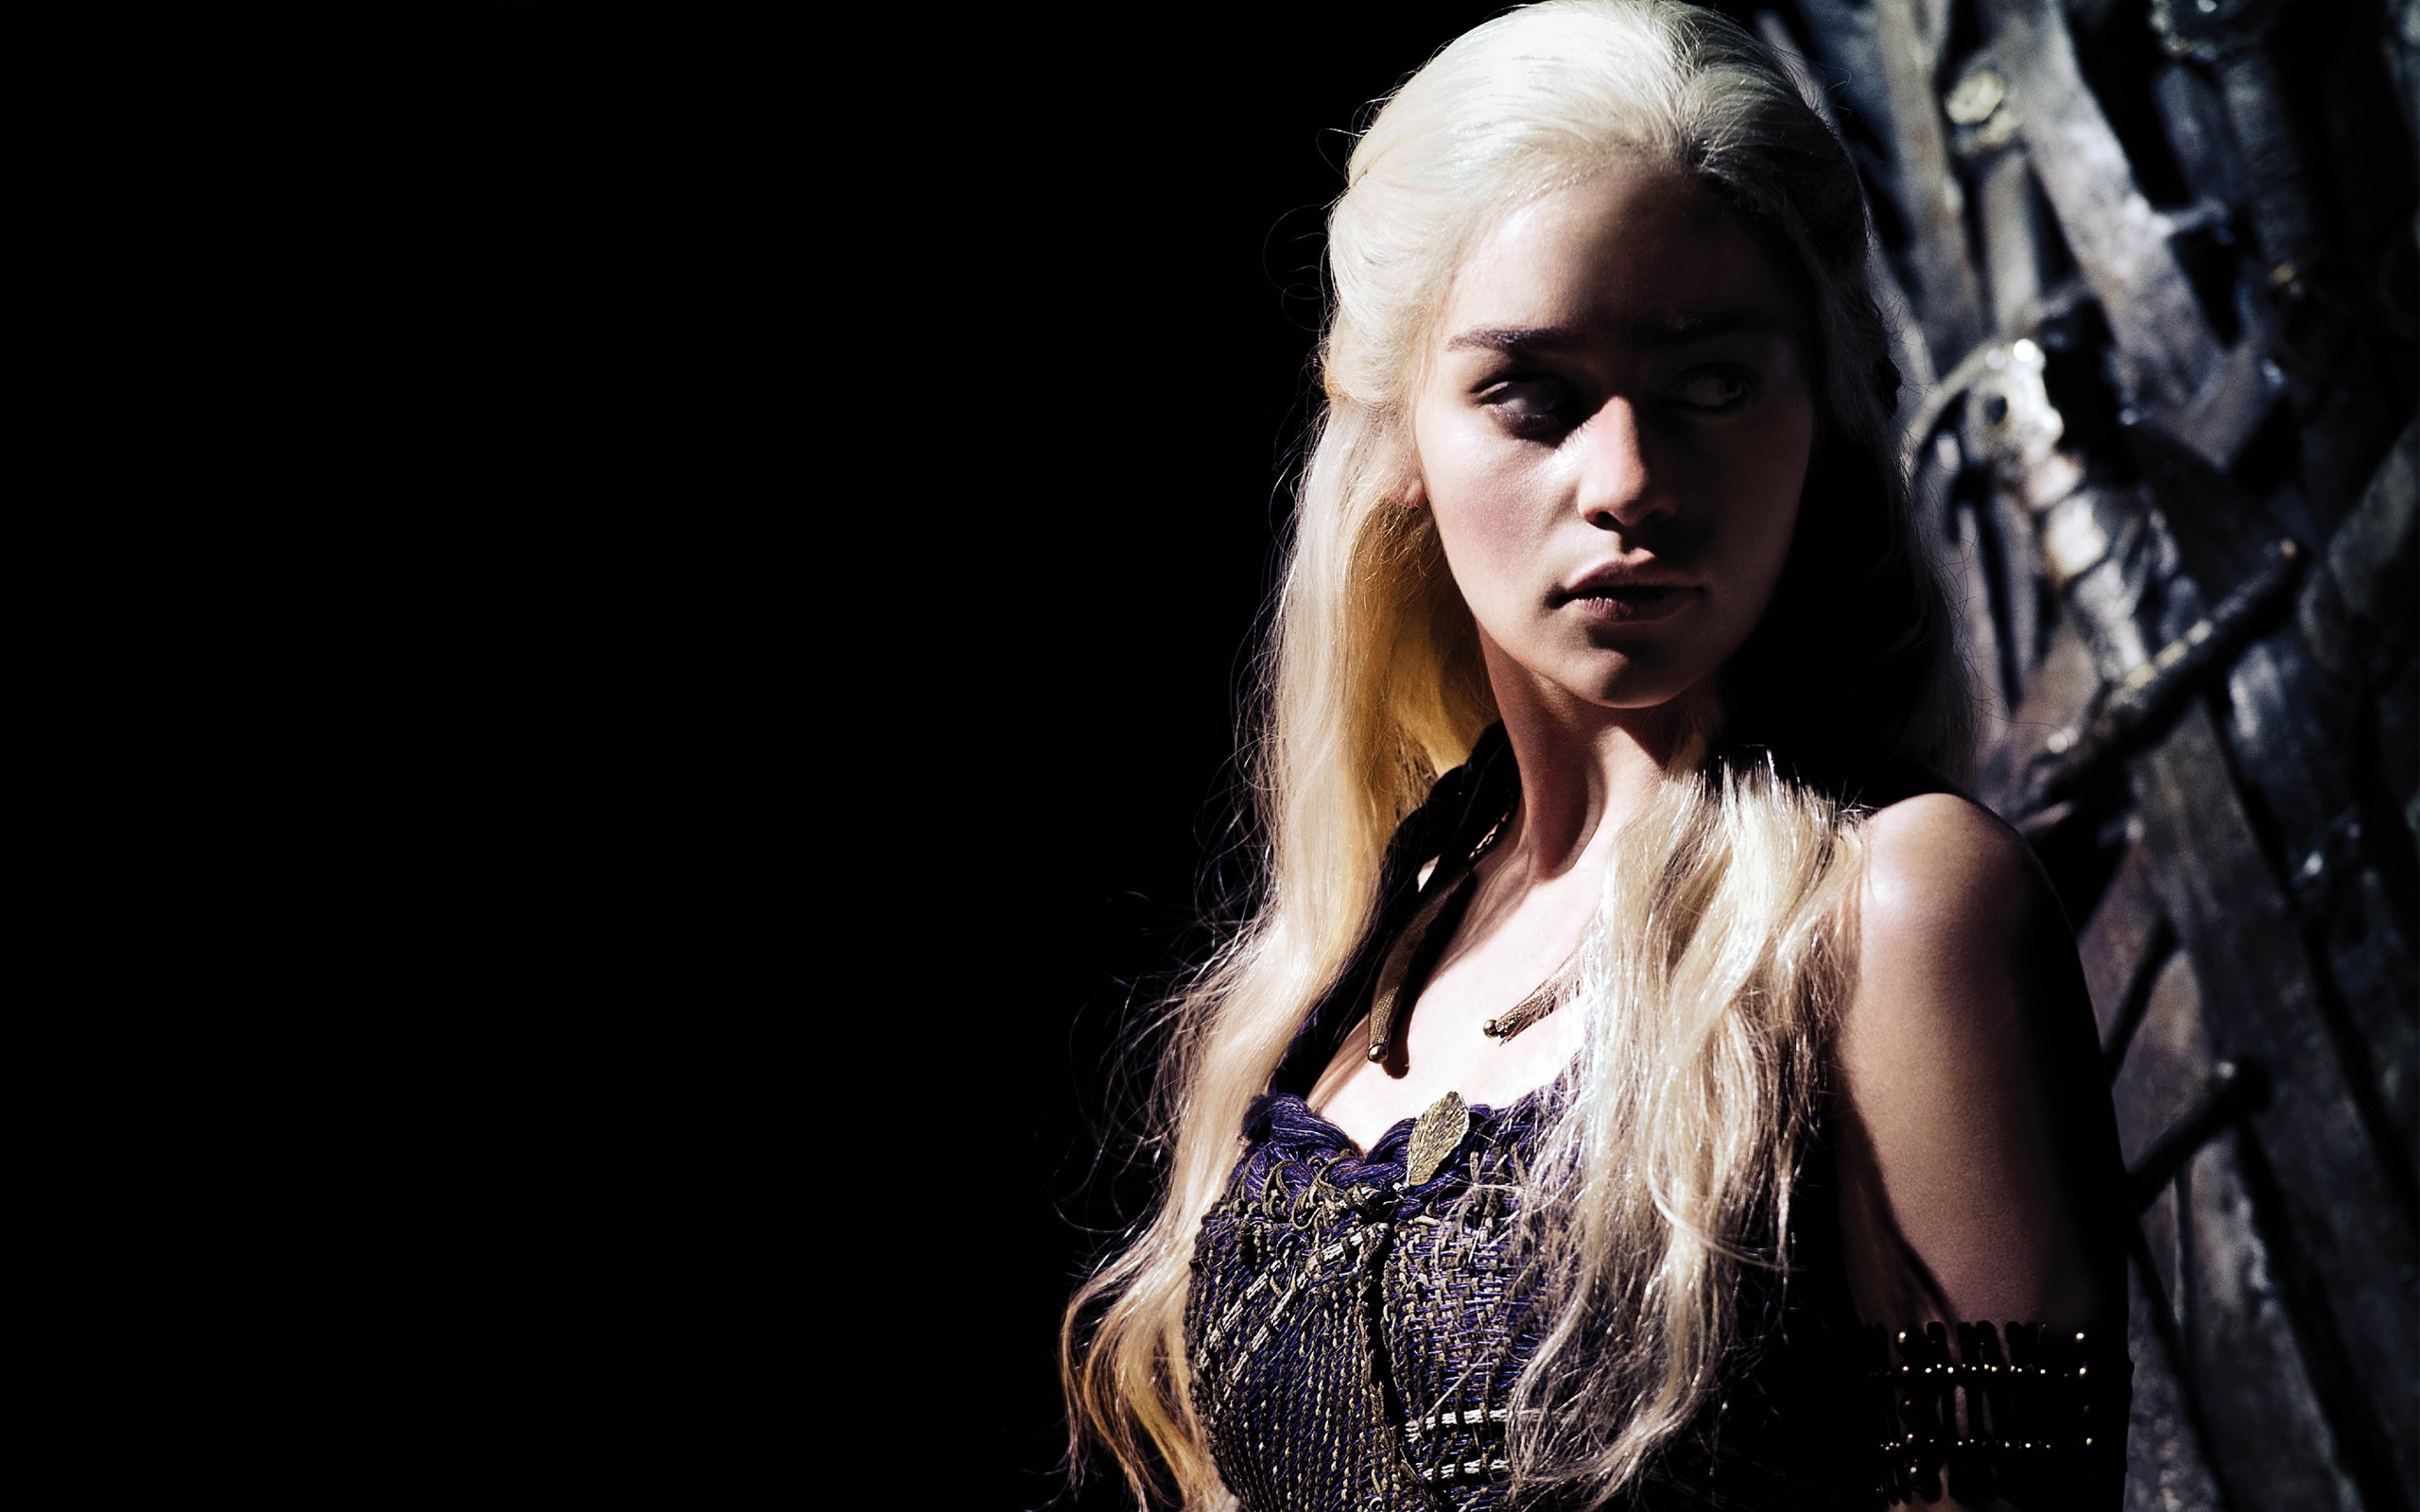  Daenerys Targaryen HD Wallpapers Background Images